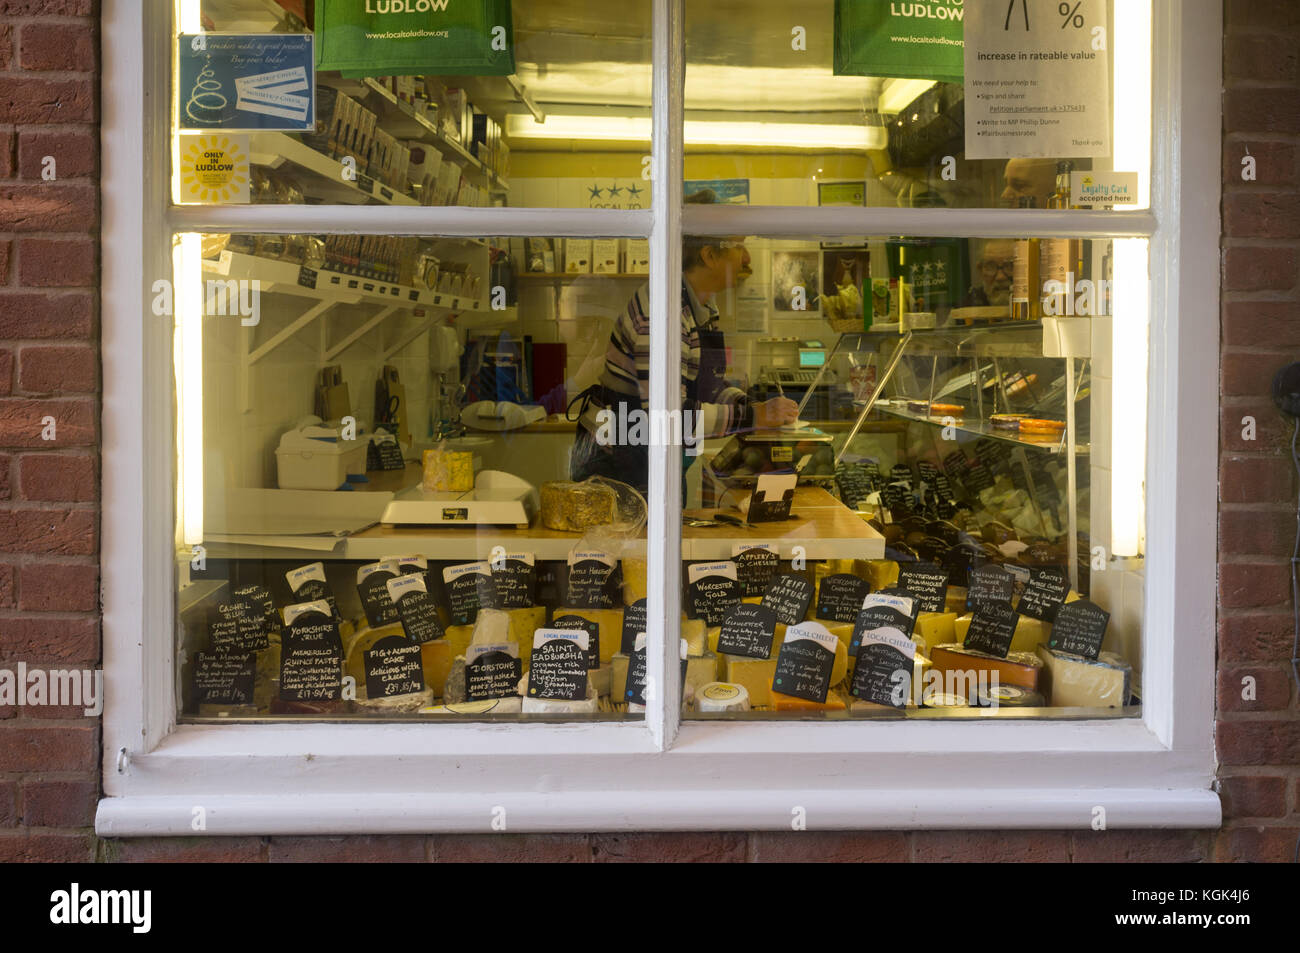 Vista exterior de una tienda de quesos en Ludlow, Shropshire UK Foto de stock